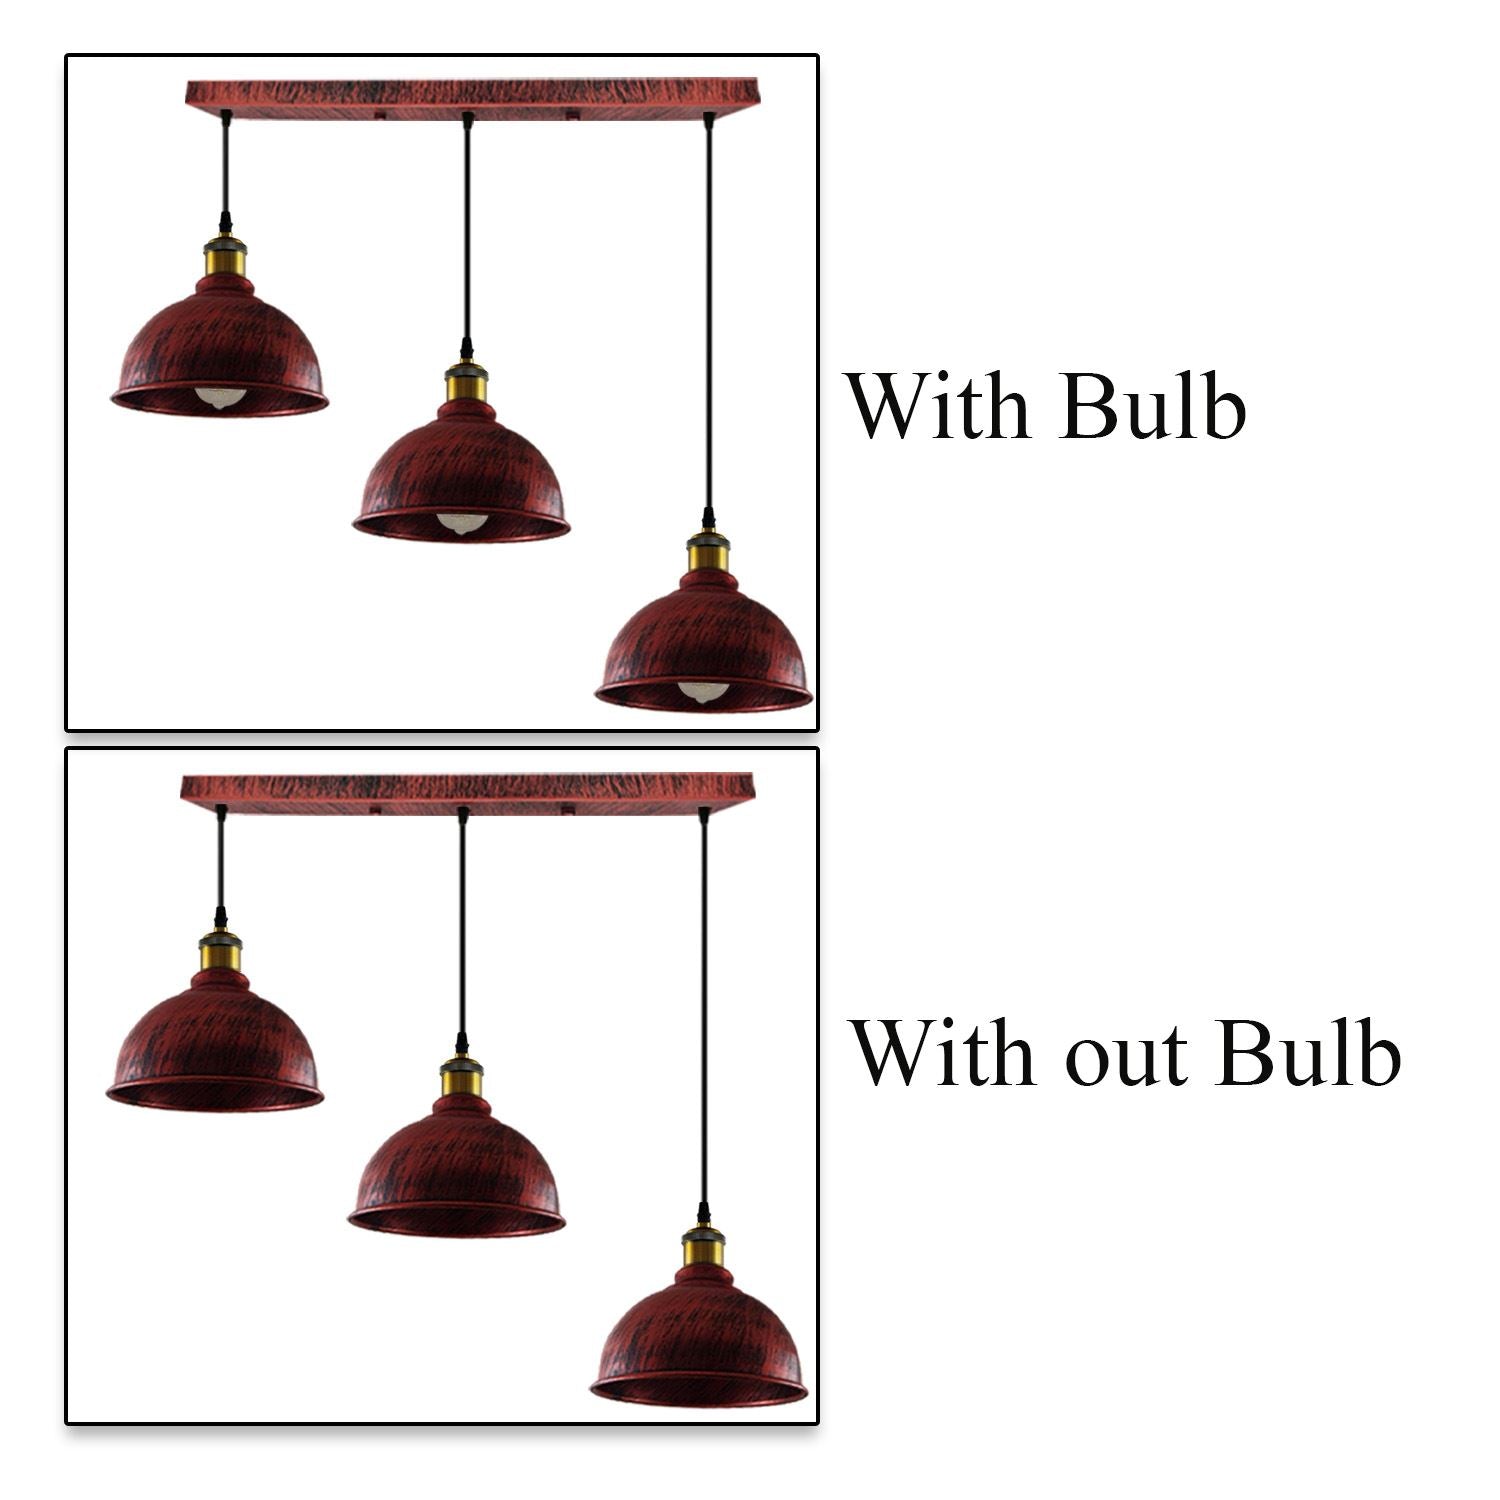 Vintage Industrial Brushed Copper Indoor Hanging Adjustable Pendant Light Metal Mug Cage Ceiling Chandelier~3386 - LEDSone UK Ltd